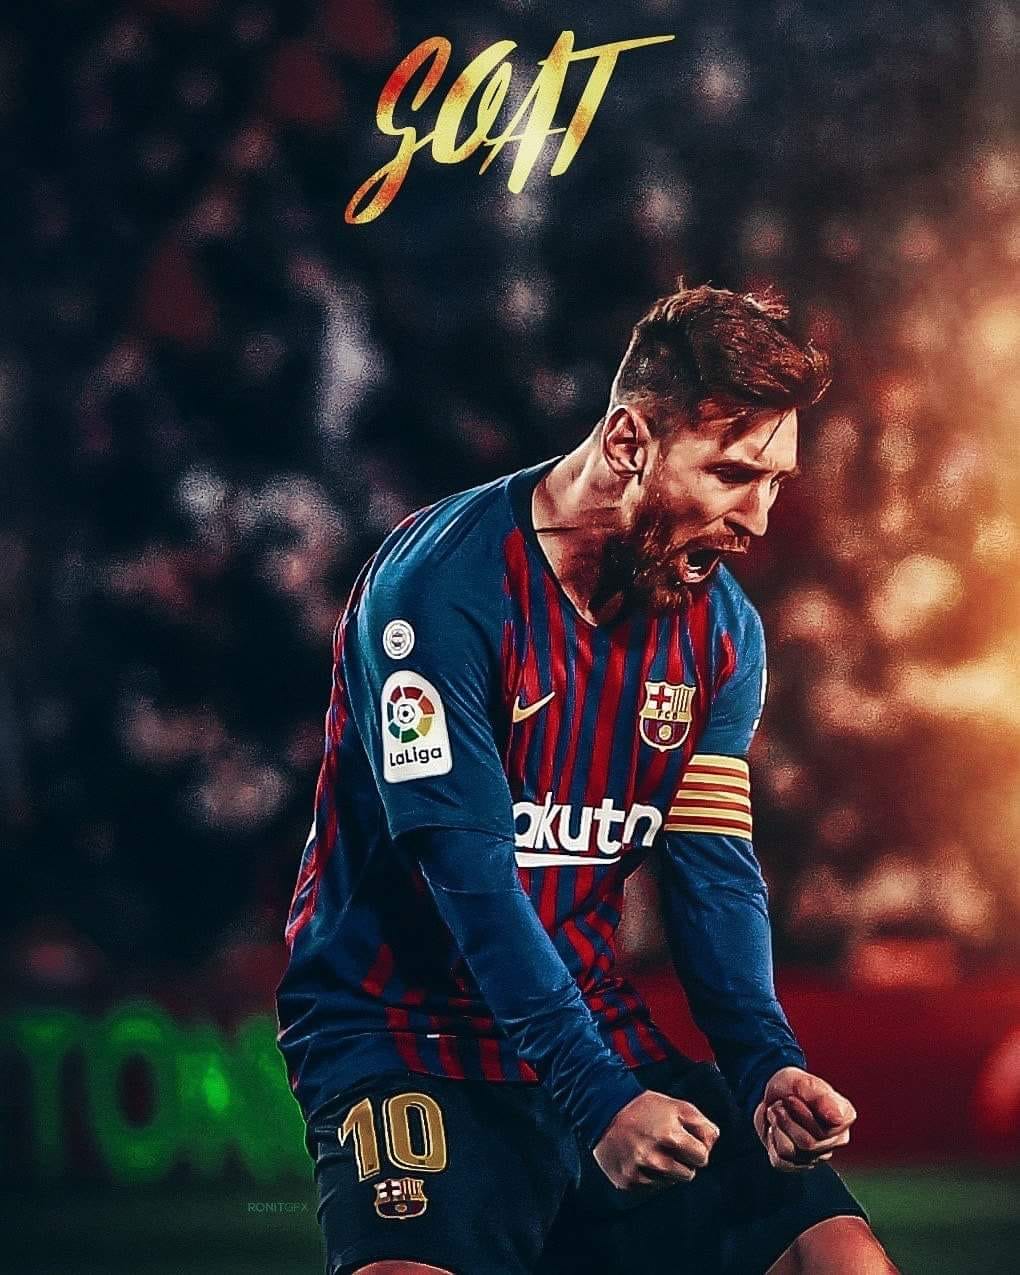 29+] FC Barcelona Messi Wallpapers - WallpaperSafari